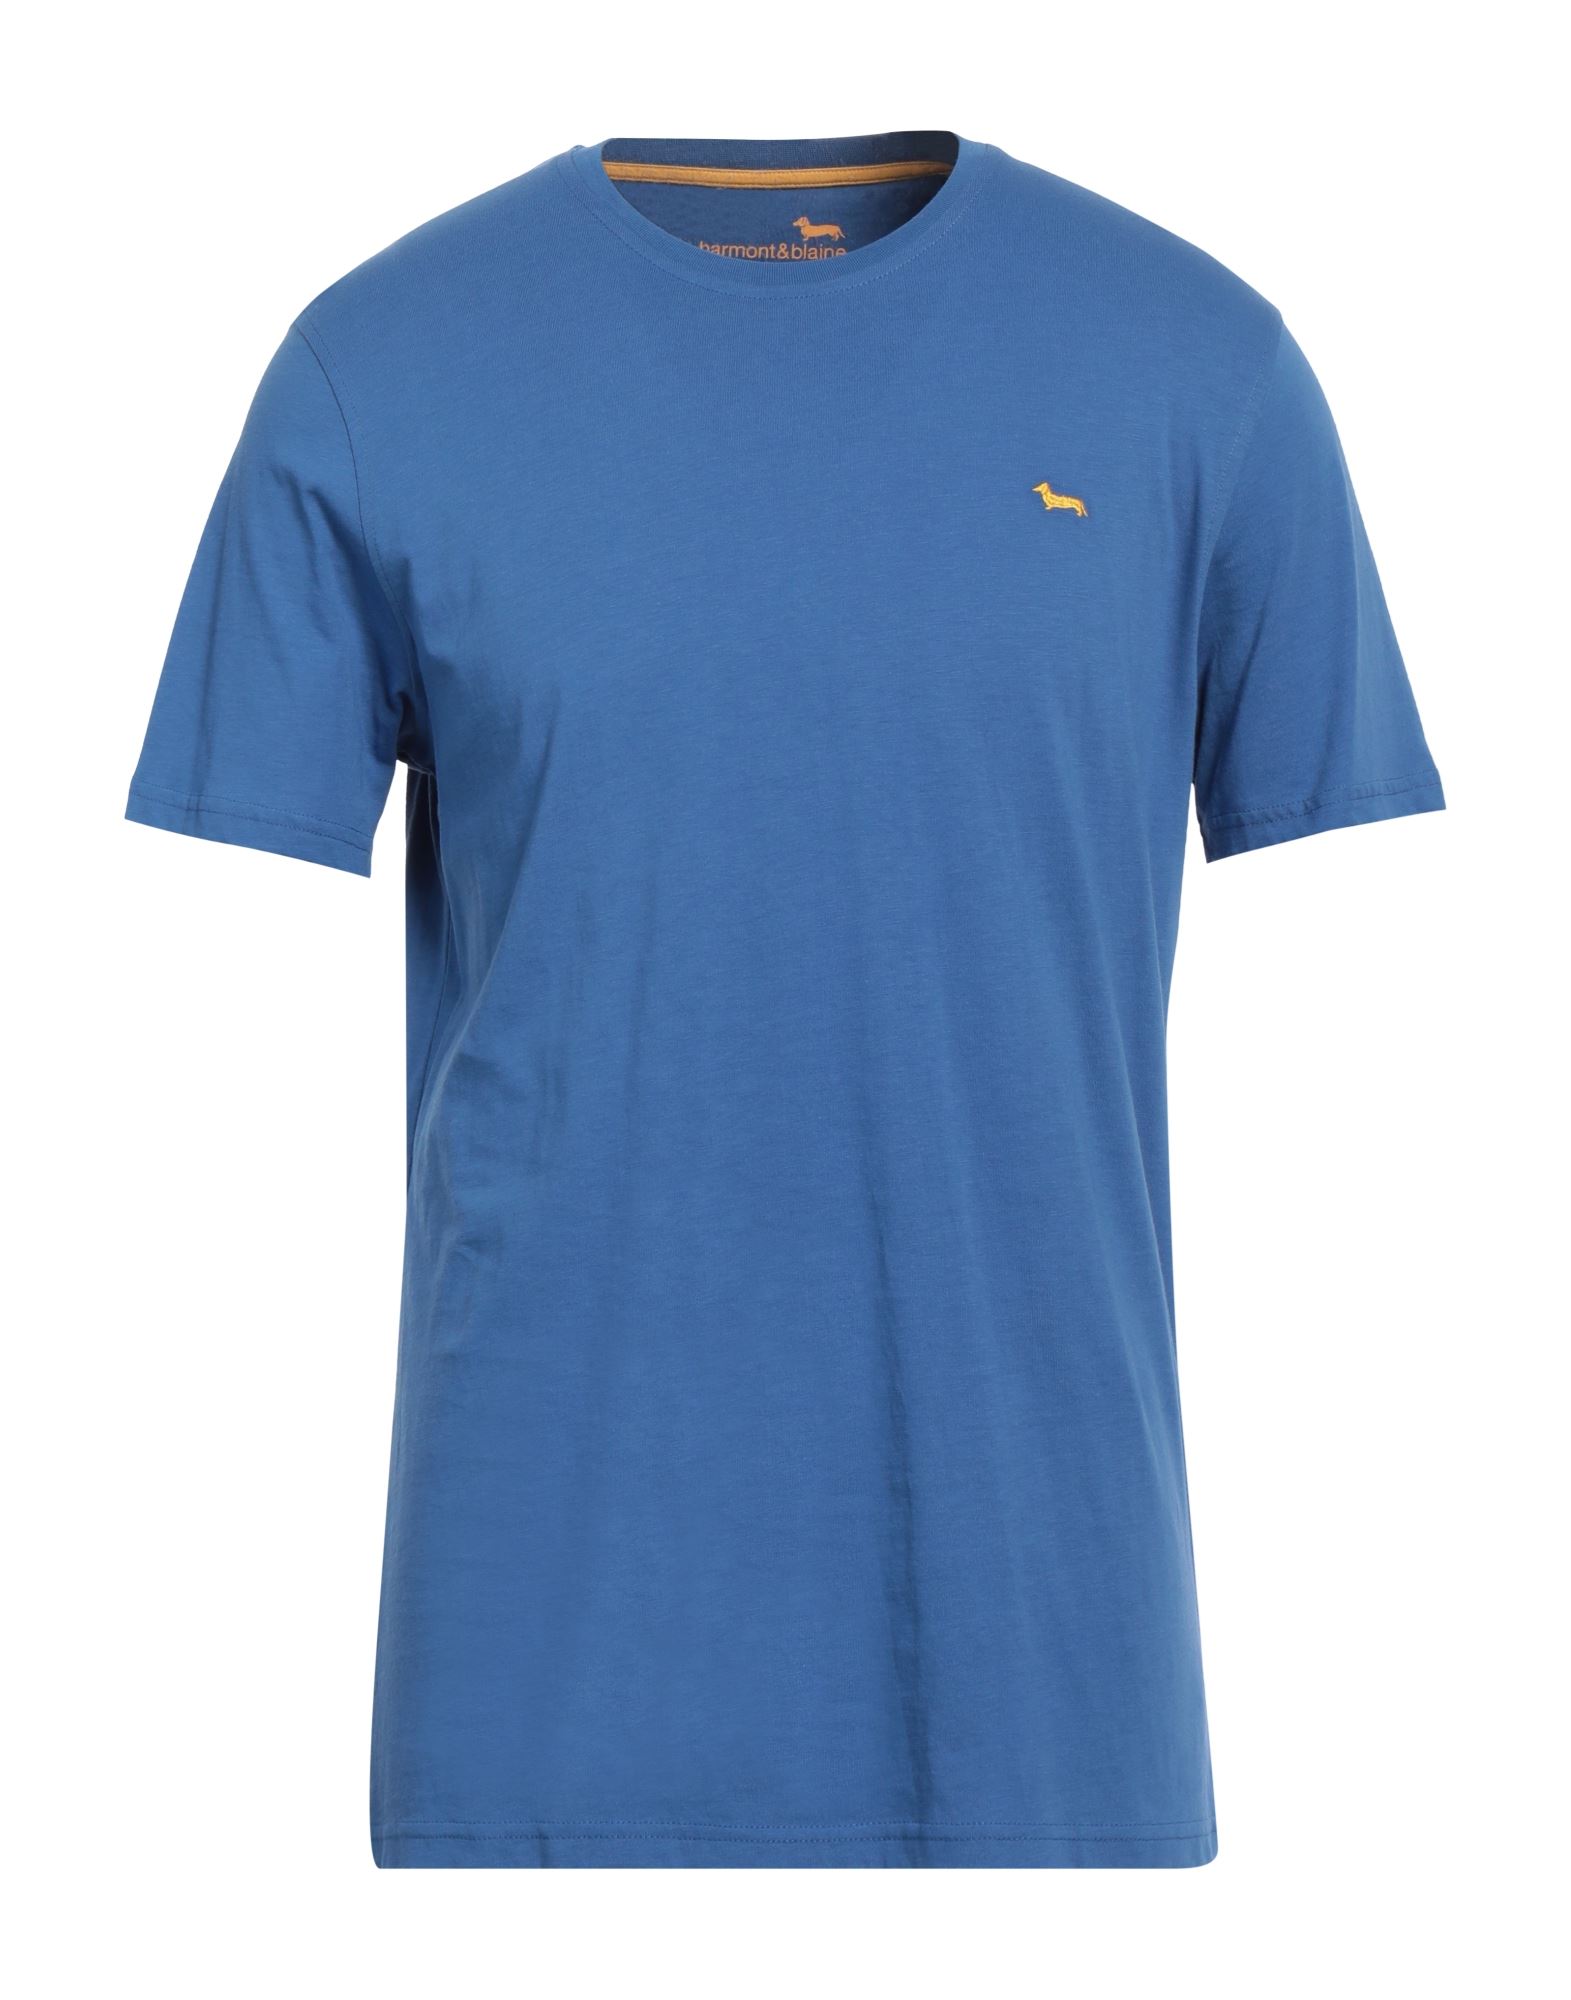 HARMONT & BLAINE T-shirts Herren Blau von HARMONT & BLAINE